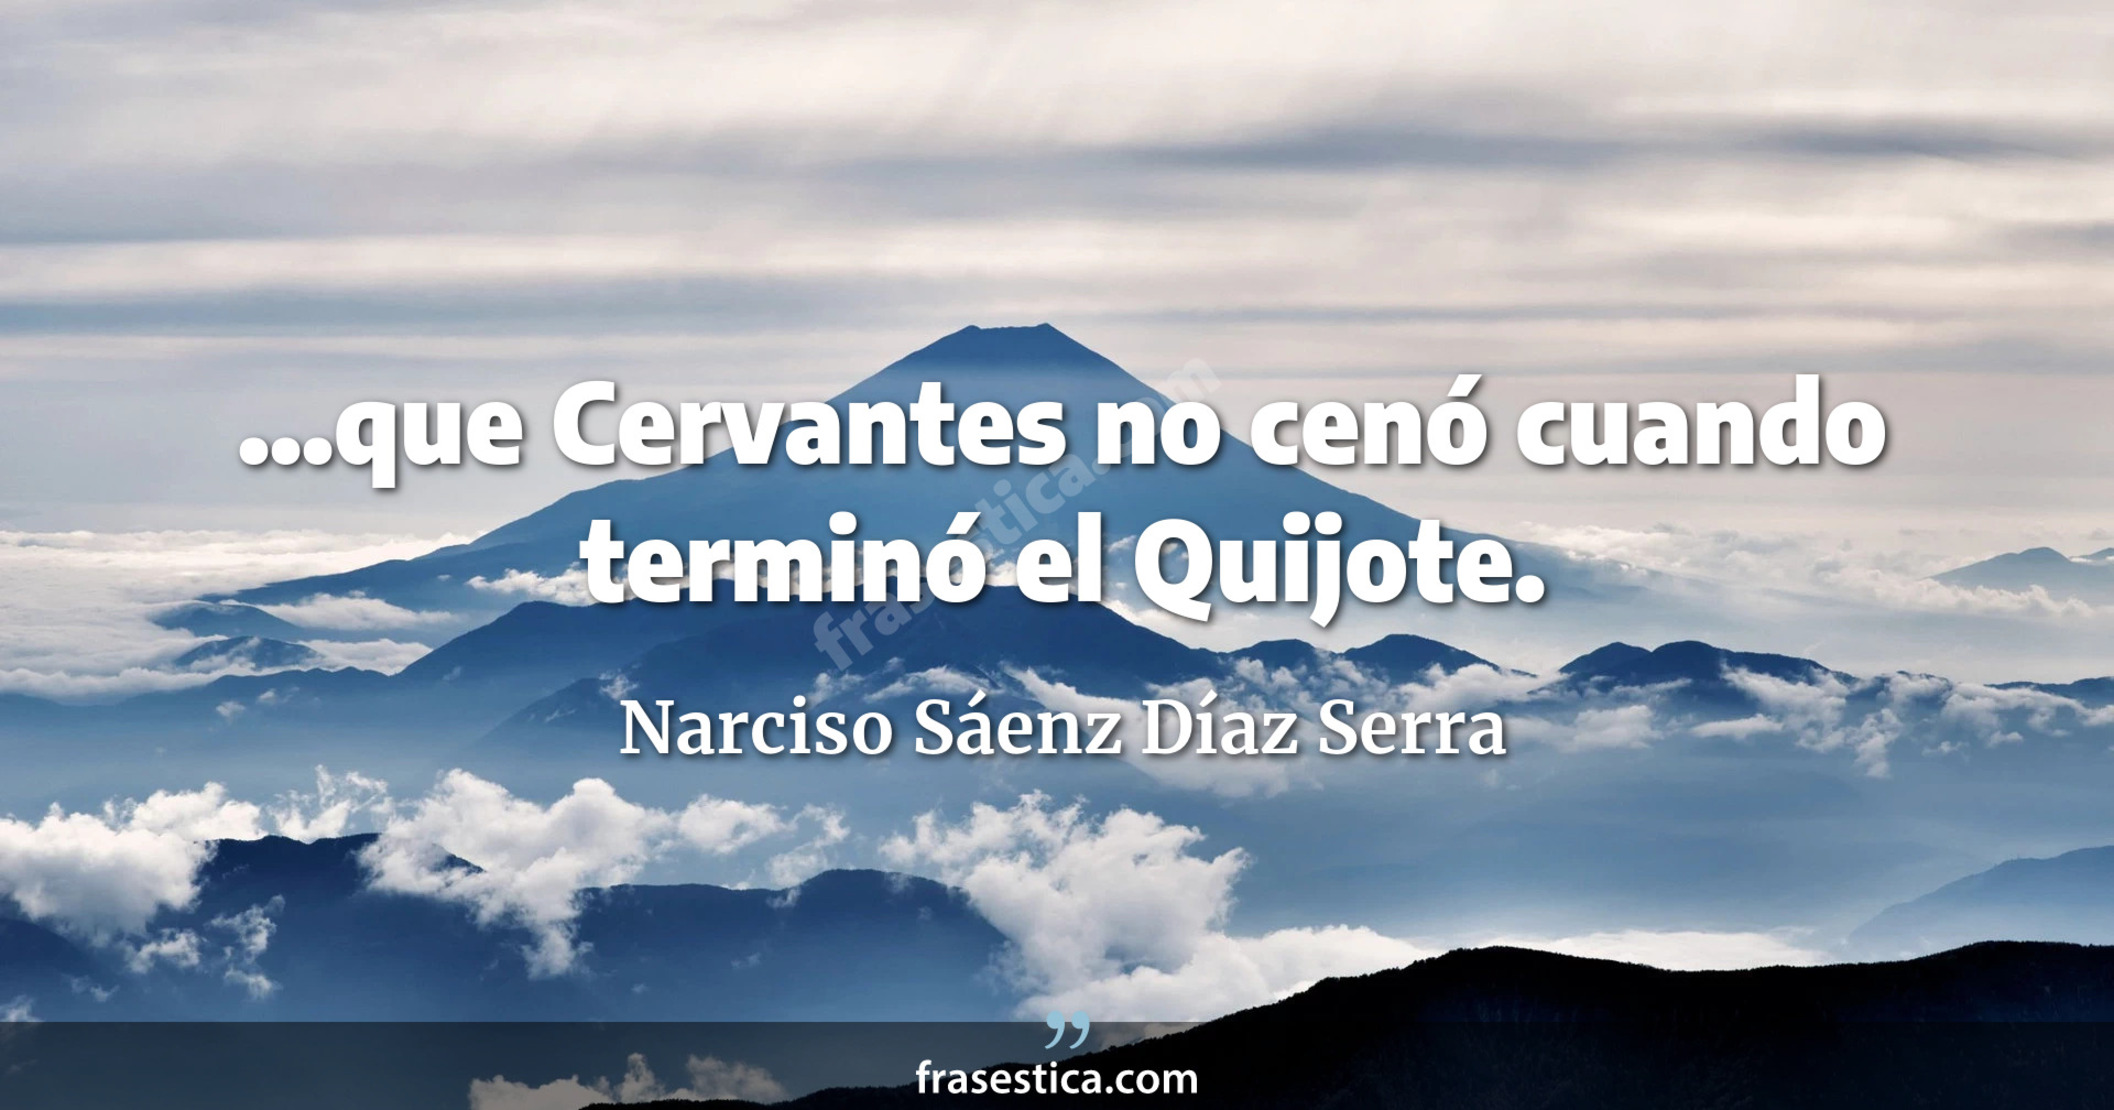 ...que Cervantes no cenó cuando terminó el Quijote. - Narciso Sáenz Díaz Serra